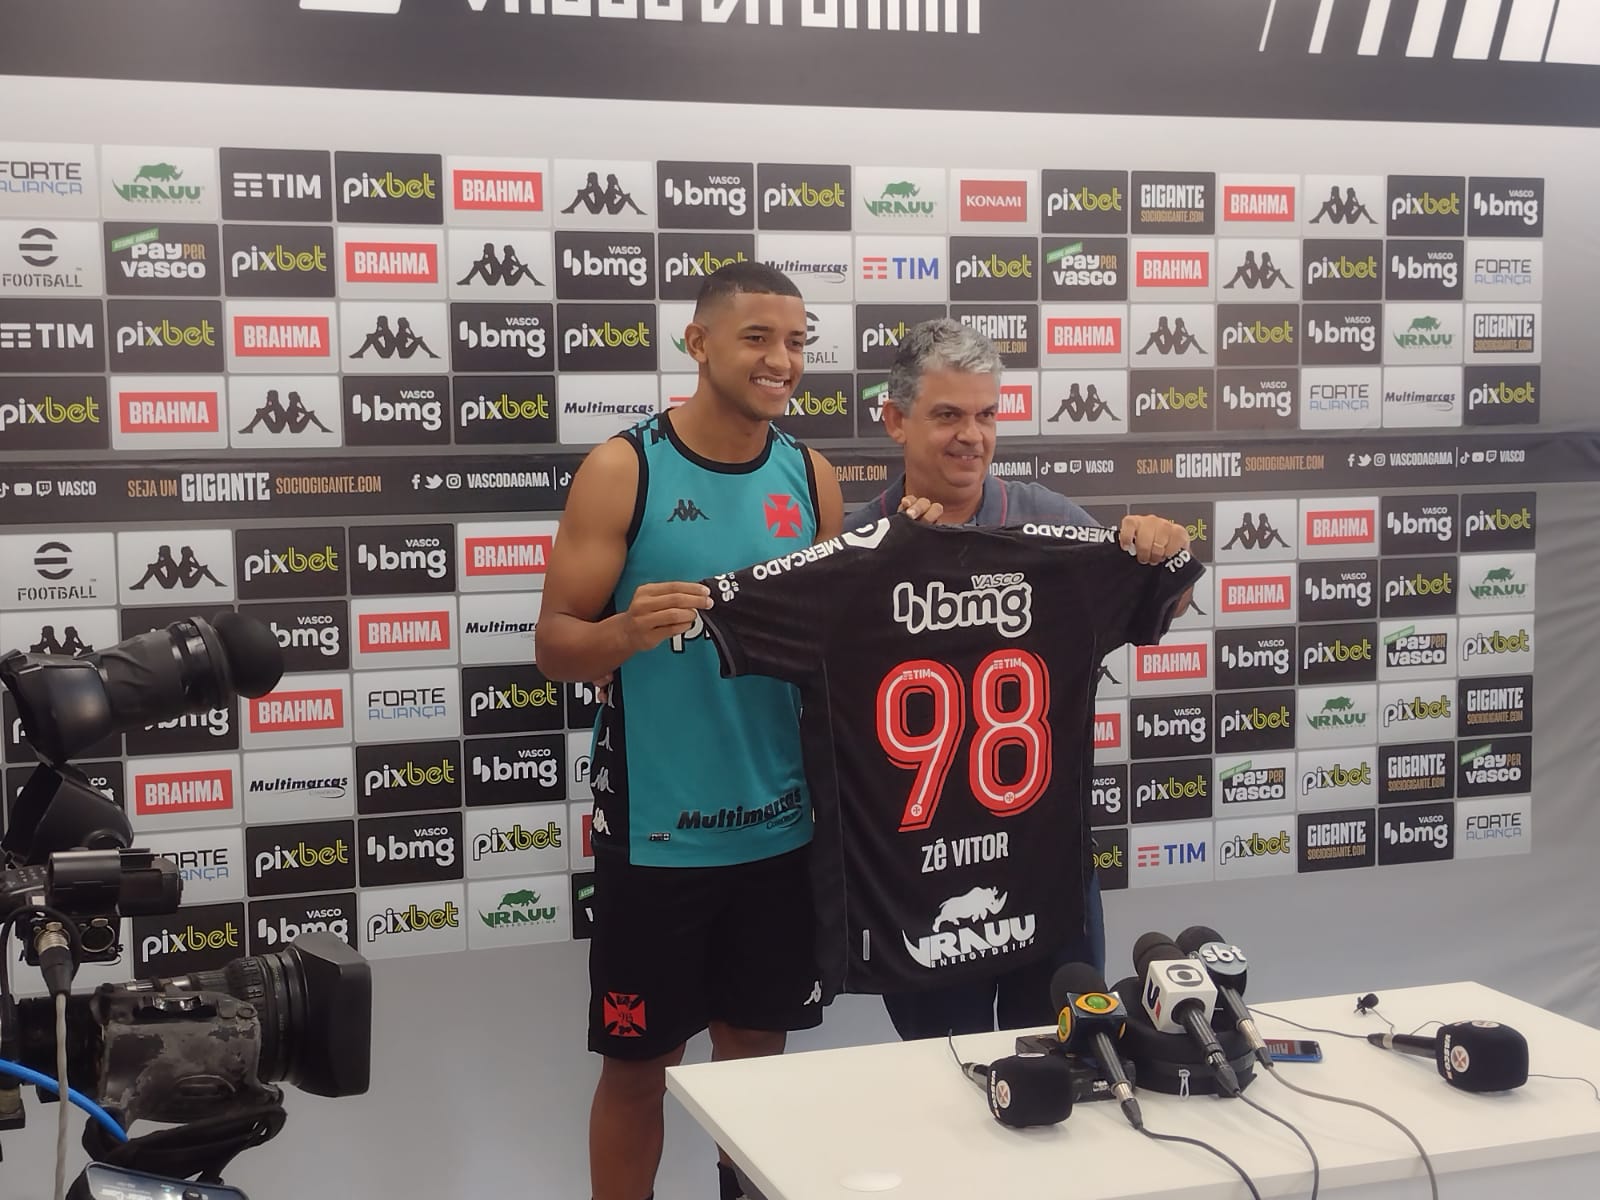 Palacios revela sonho ao vestir a camisa do Cruzeiro